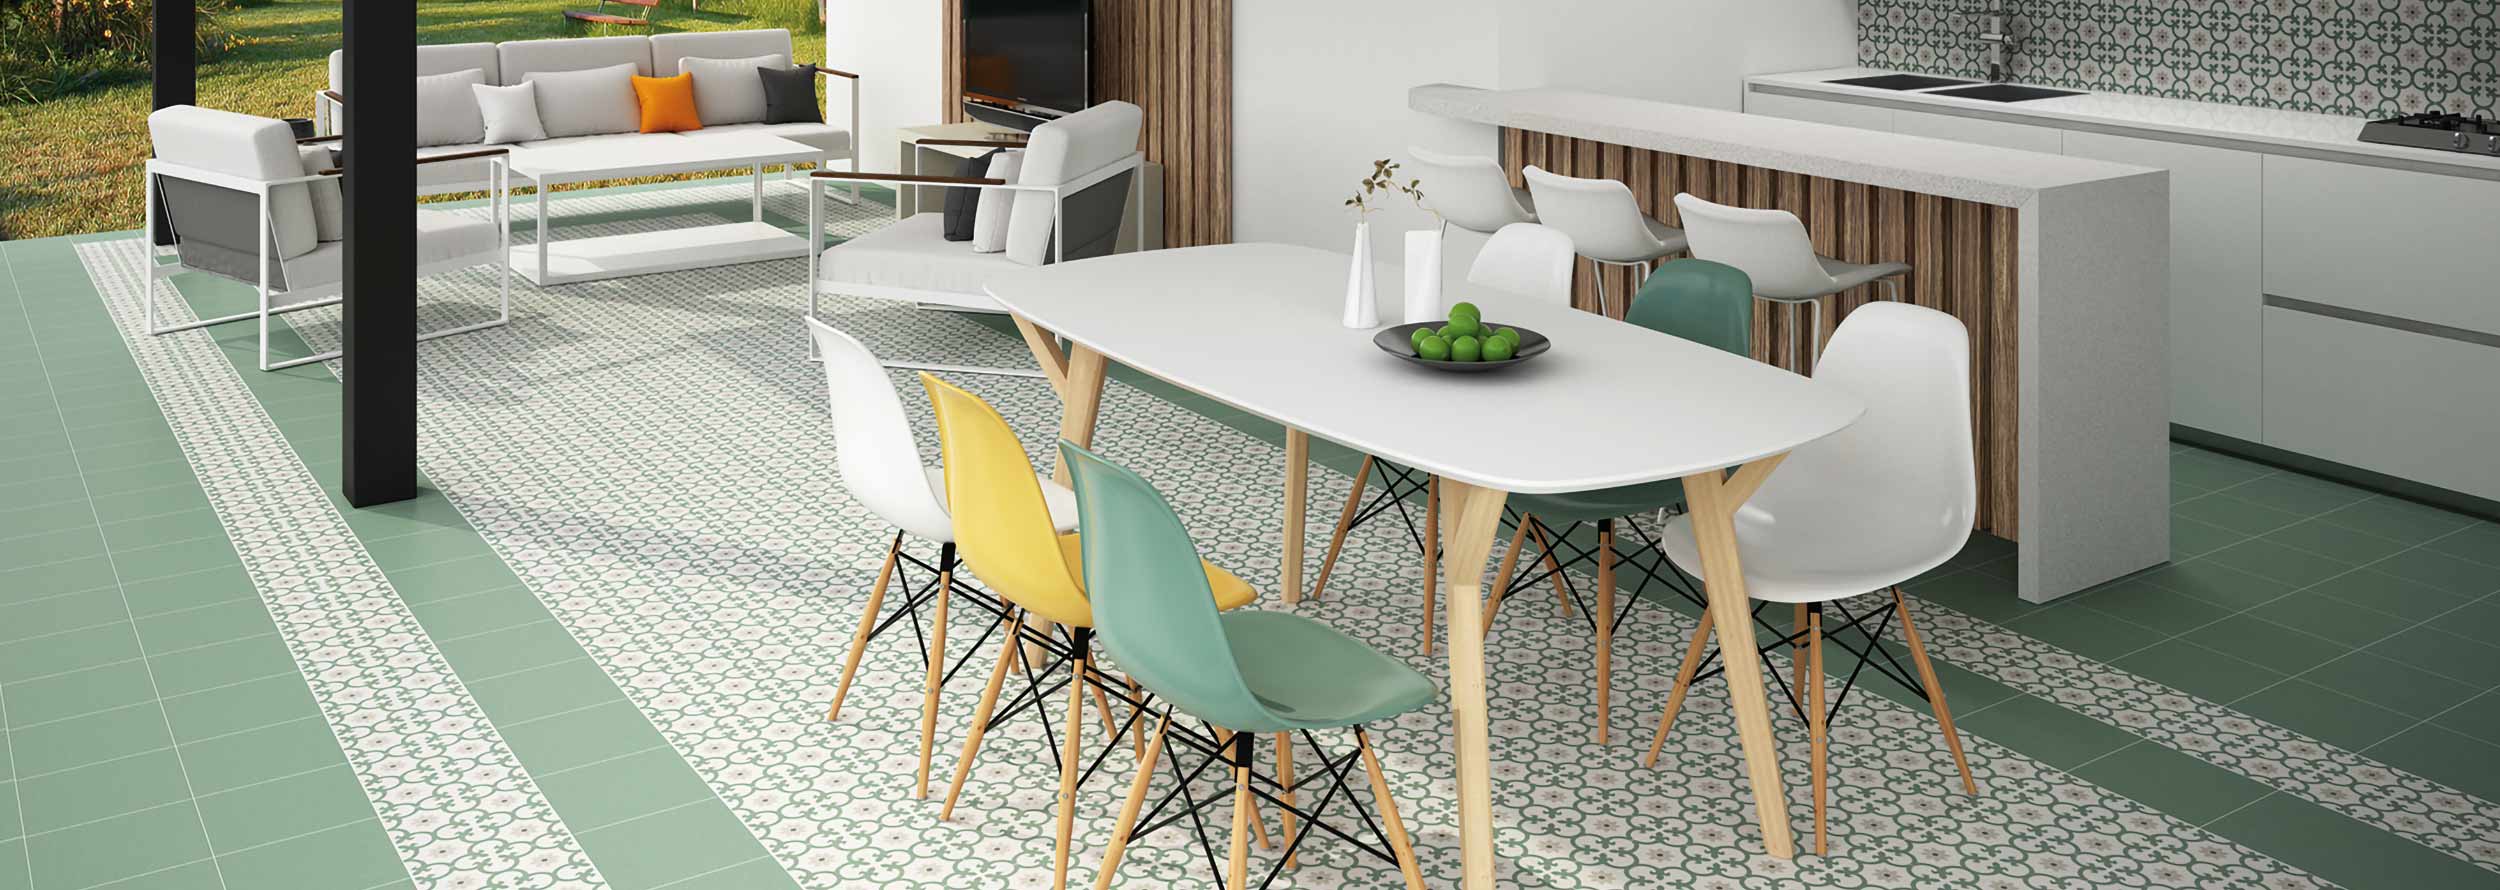 Séjour, salle à manger et cuisine équipés d'un carrelage imitation carreaux de ciment Dessi coloris vert